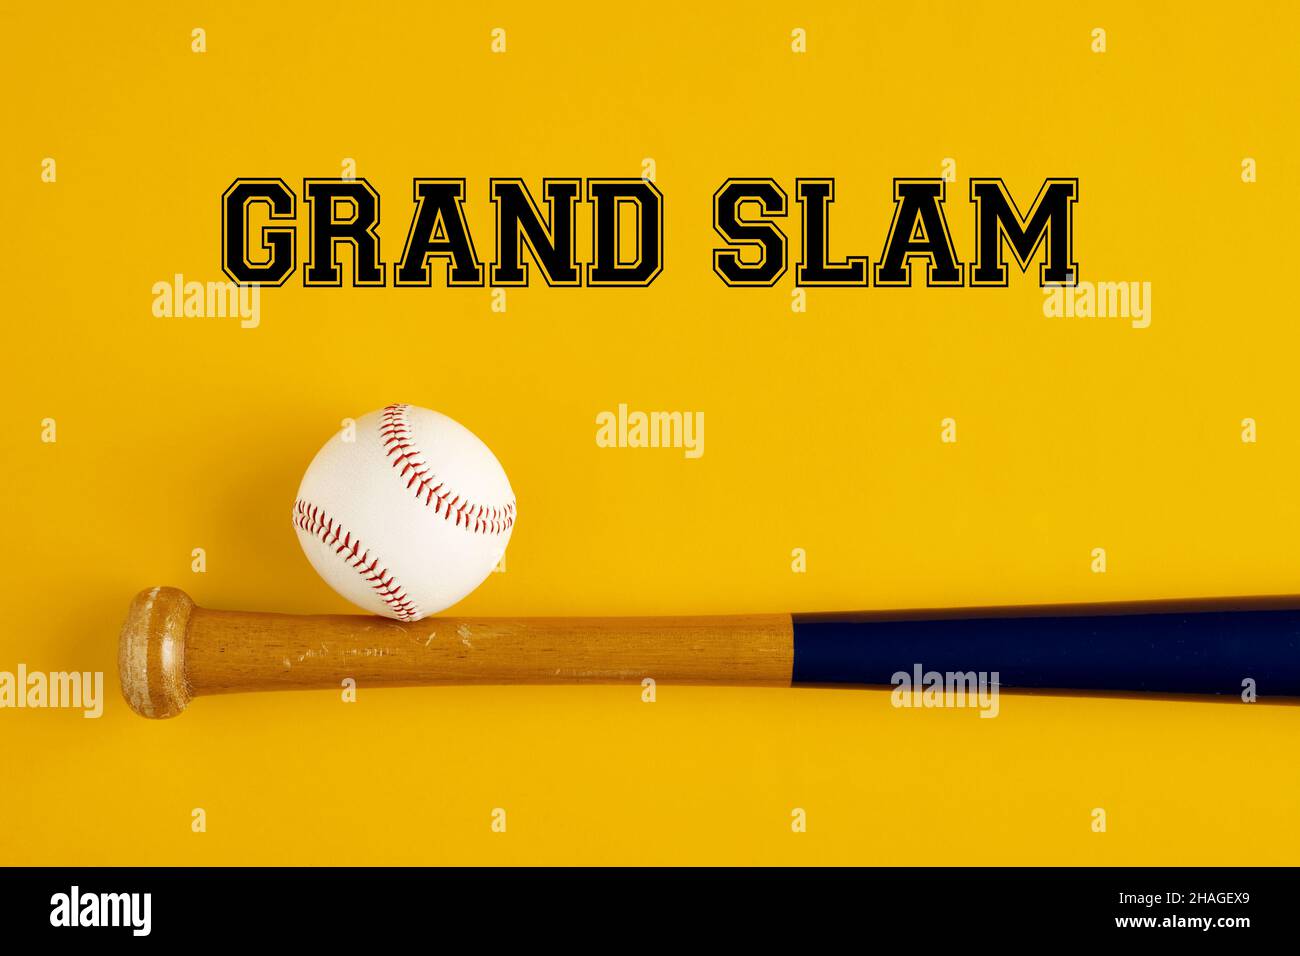 Baseballschläger und ein Ball auf gelbem Hintergrund mit dem Wort Grand Slam. Baseballbegriffe Konzept. Stockfoto